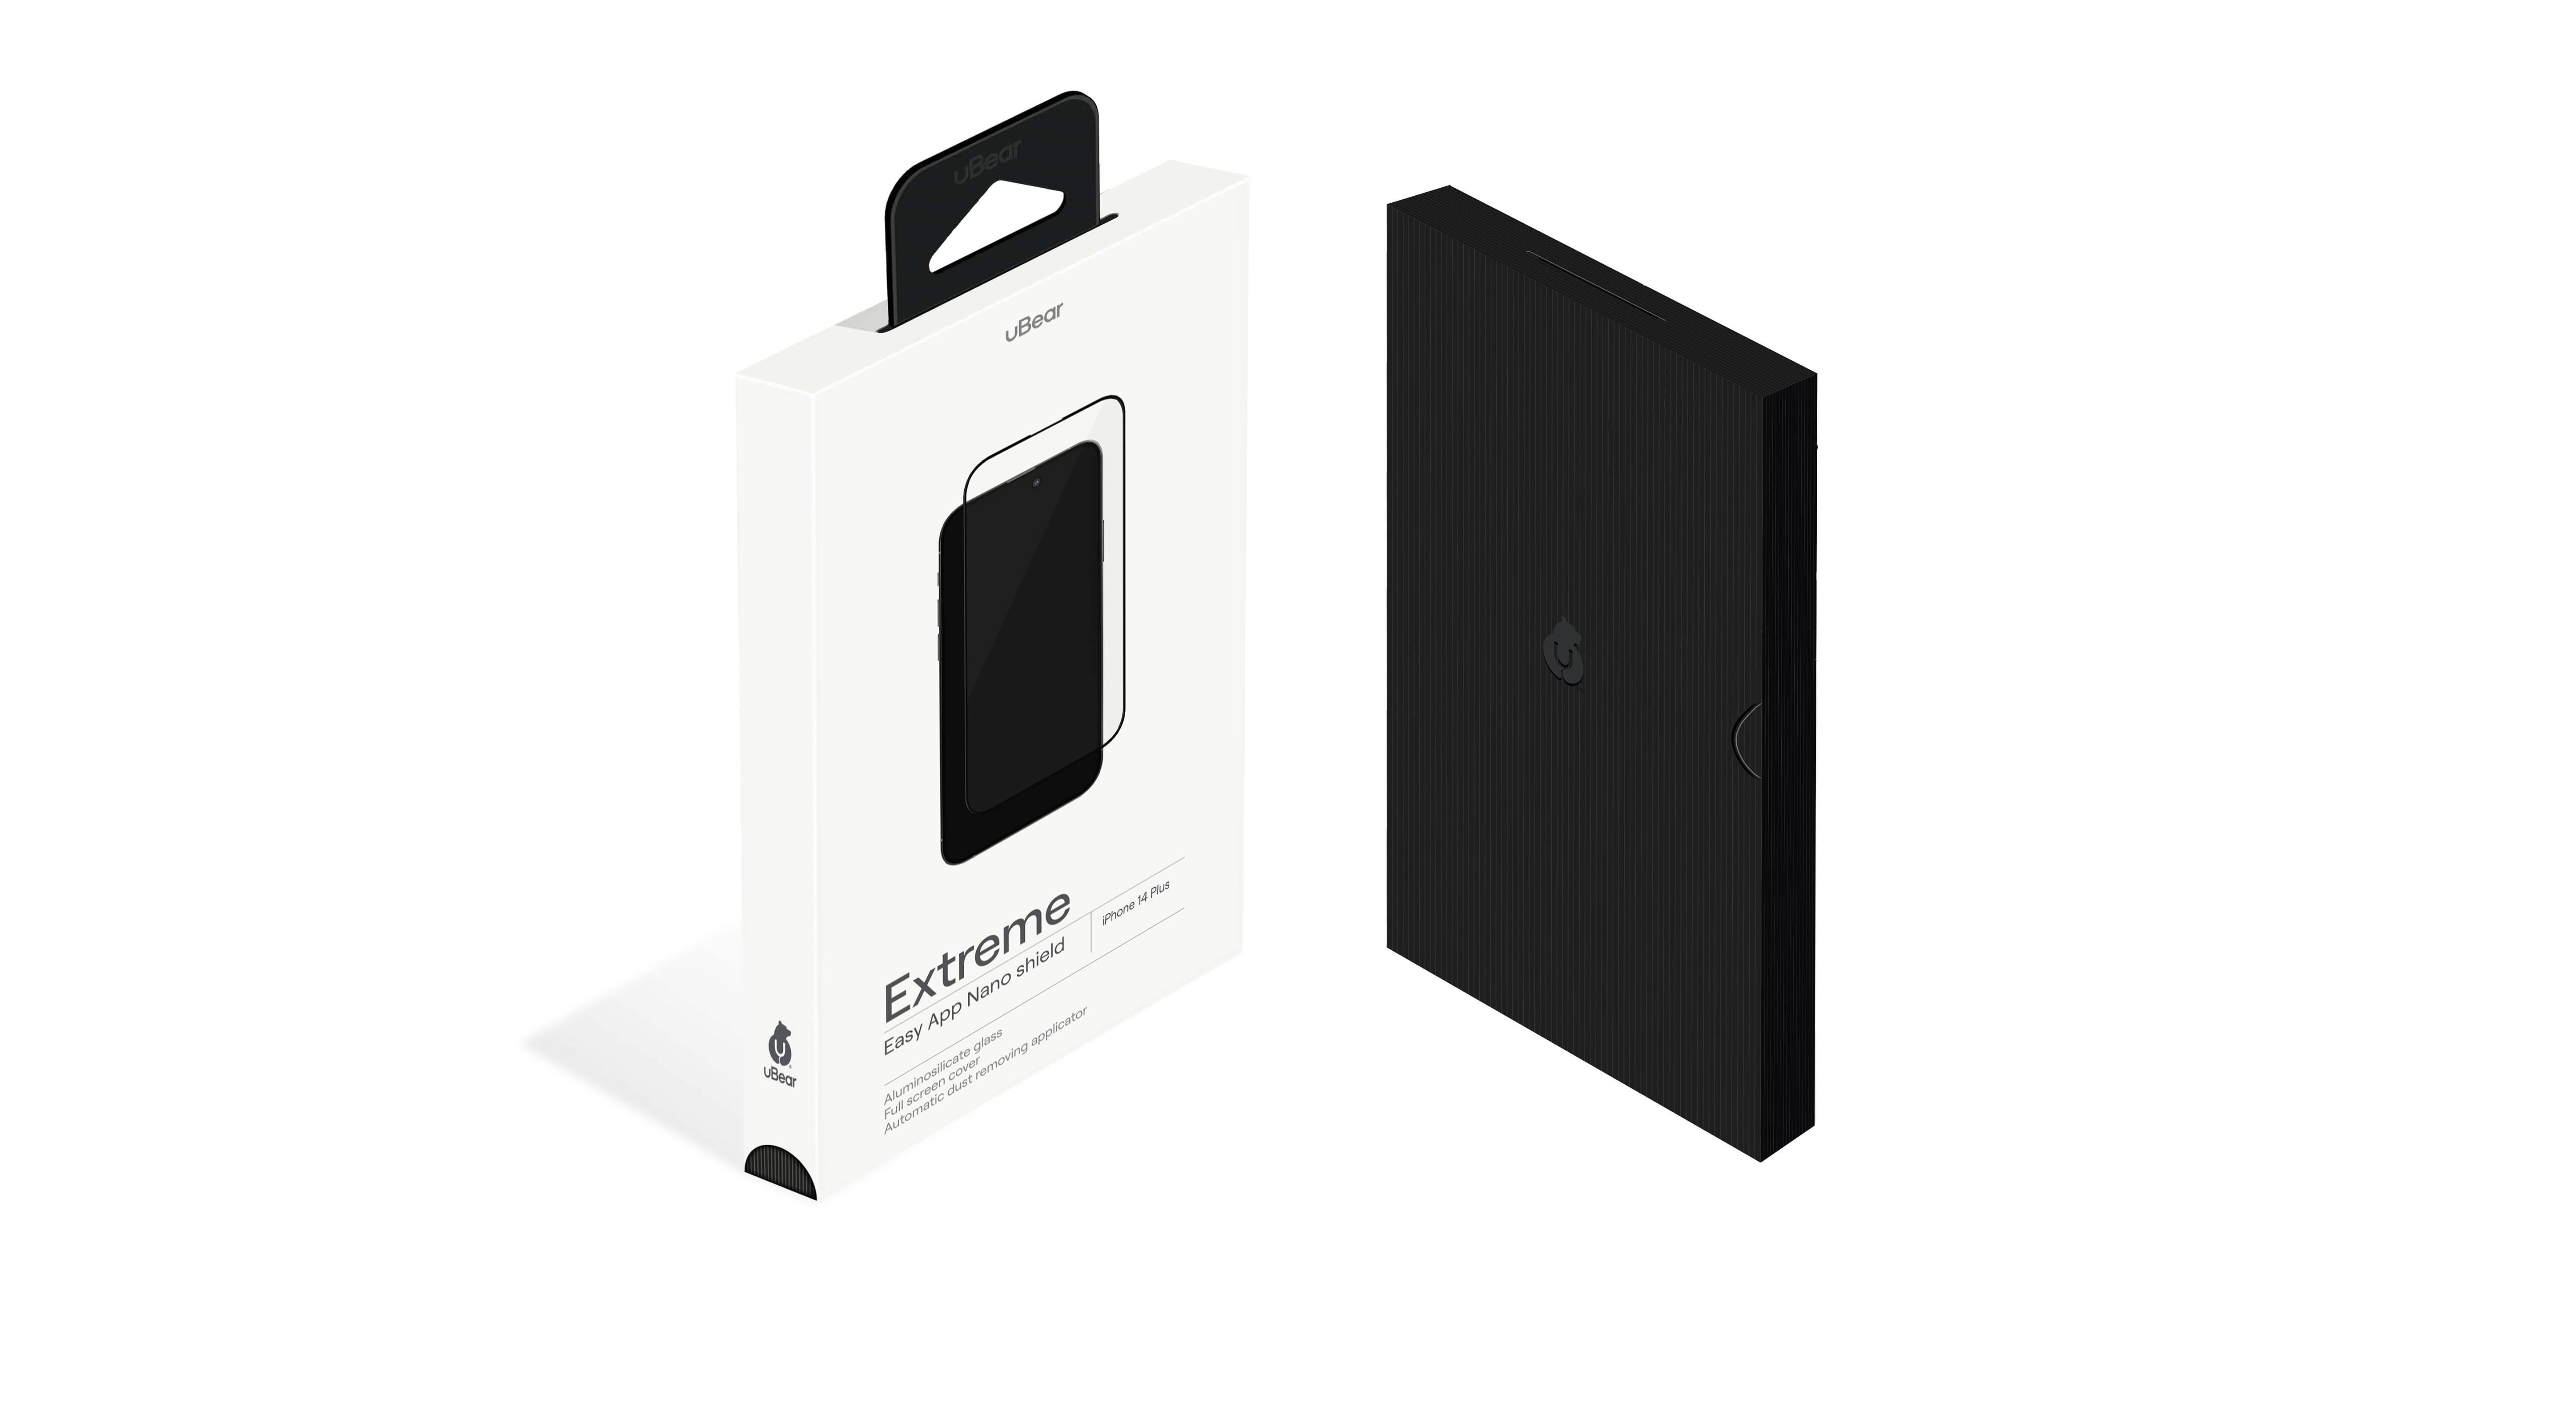 Стекло защитное  uBear Extreme Nano Shield для  iPhone 14 Max, с аппликатором Easy App, алюмосиликатное, чёрный